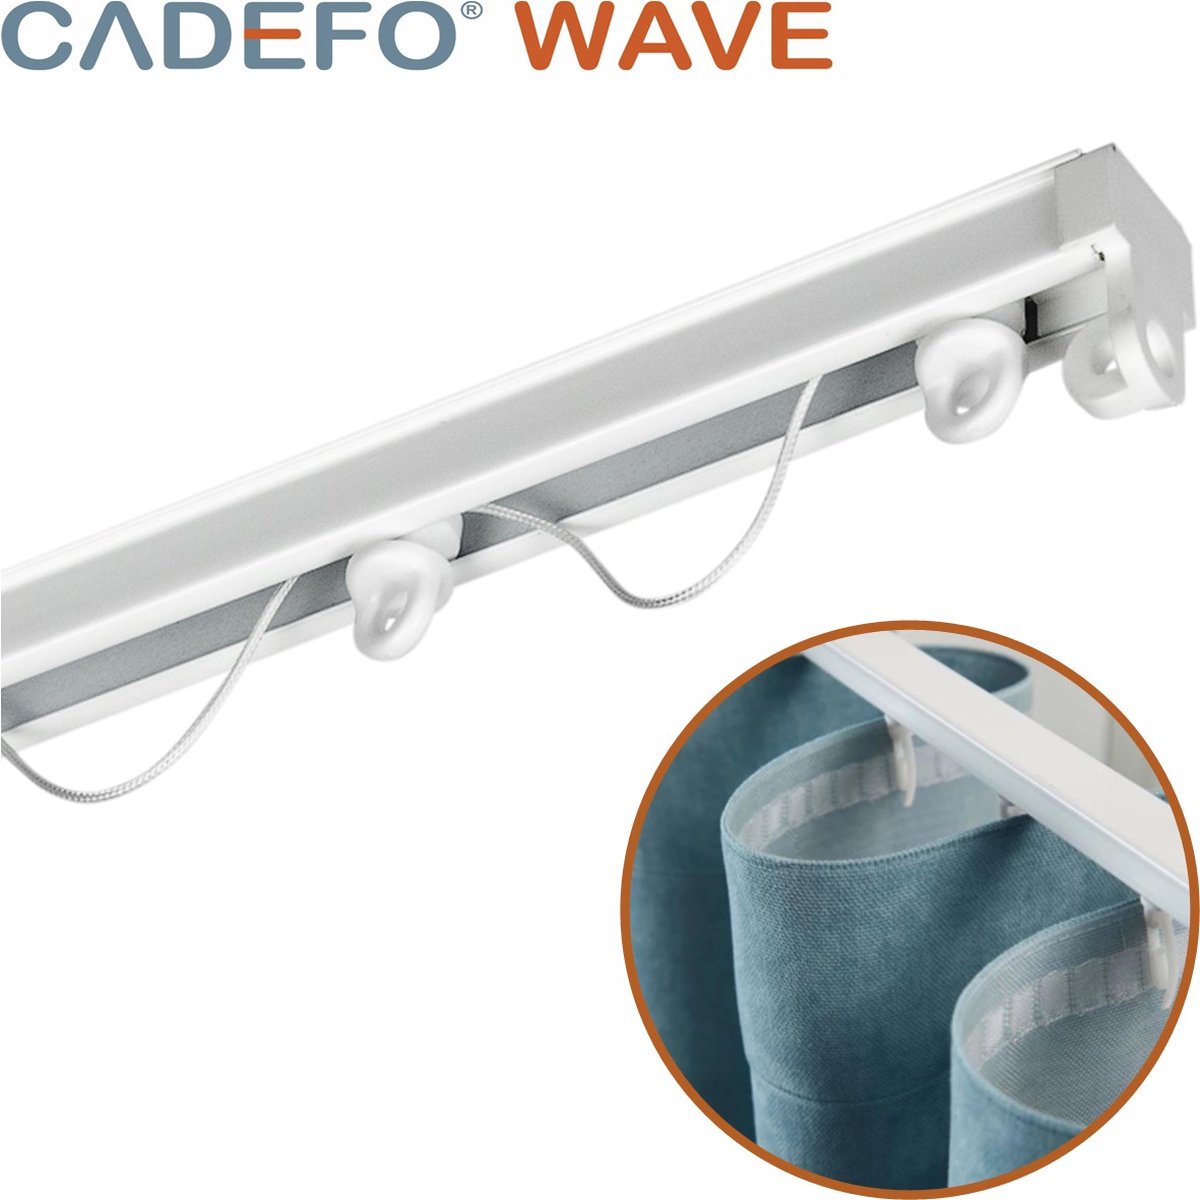 CADEFO WAVE (501 - 550 cm) Gordijnrails - Compleet op maat! - UIT 1 STUK - Leverbaar tot 6 meter - Plafondbevestiging - Lengte 521 cm